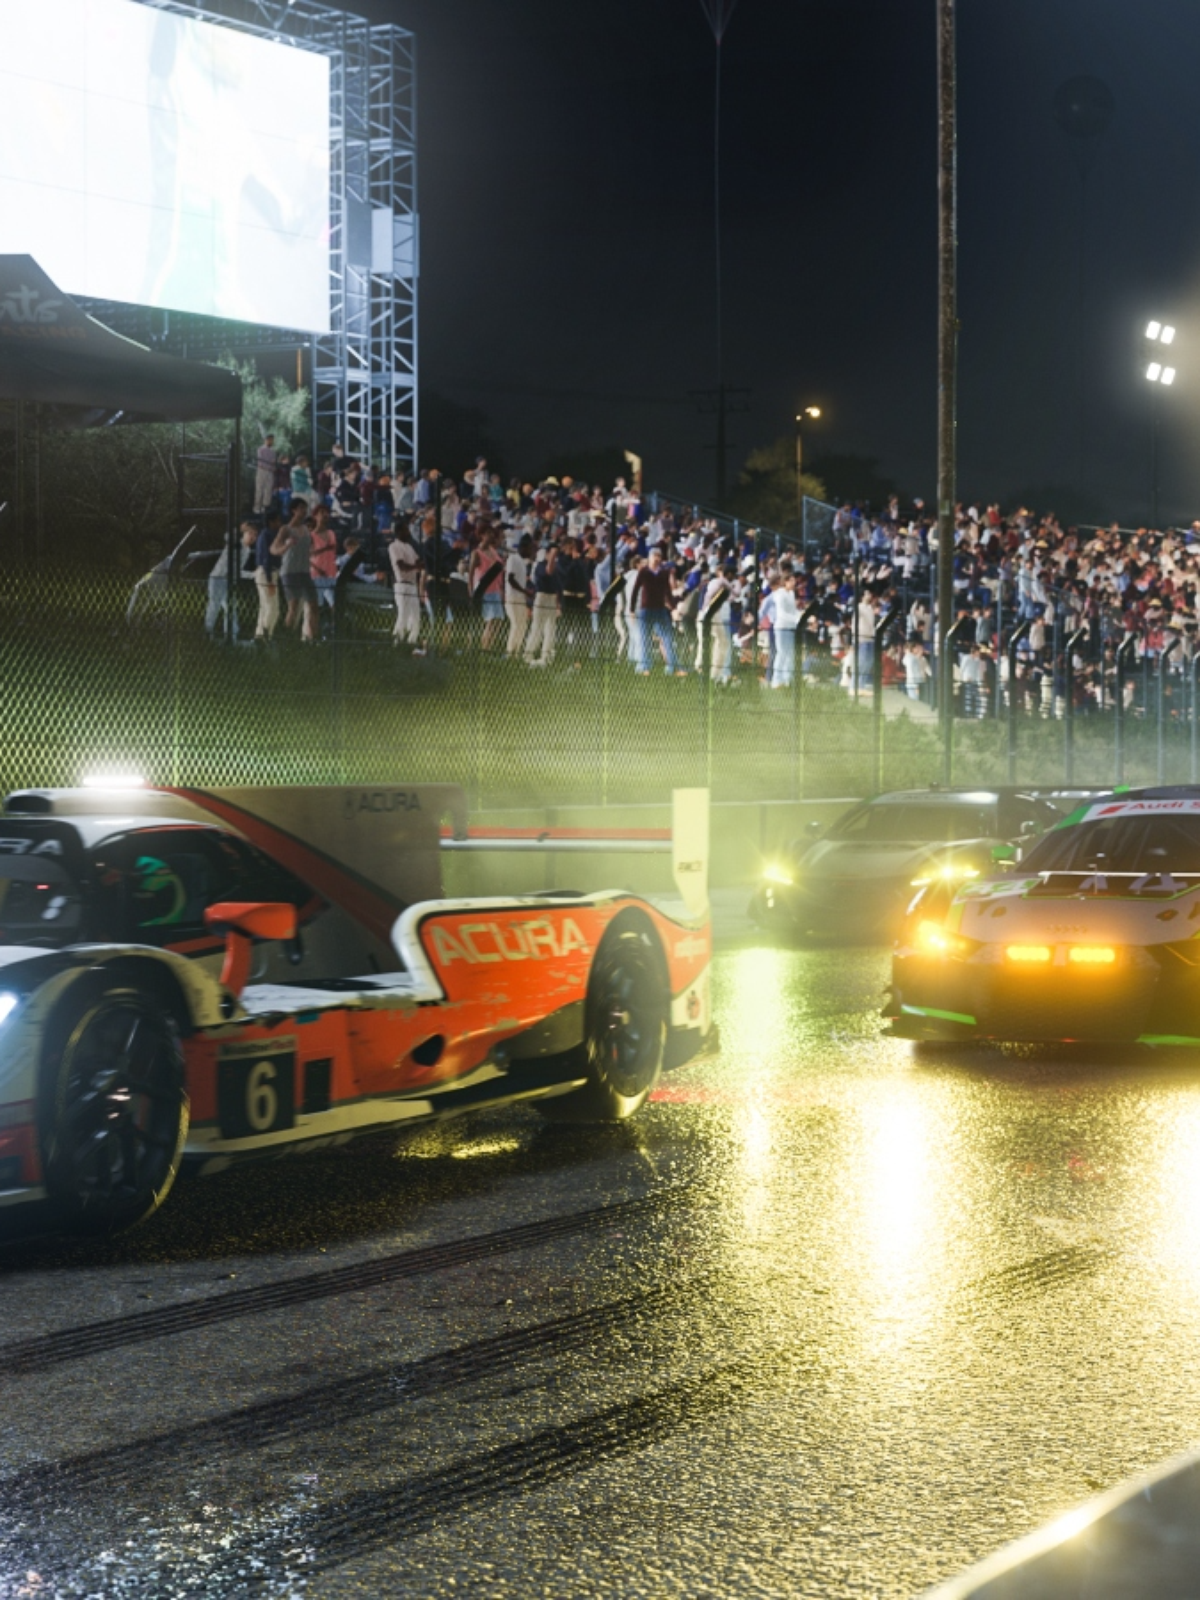 Forza Motorsport 7: saiba os requisitos mínimos e recomendados no PC